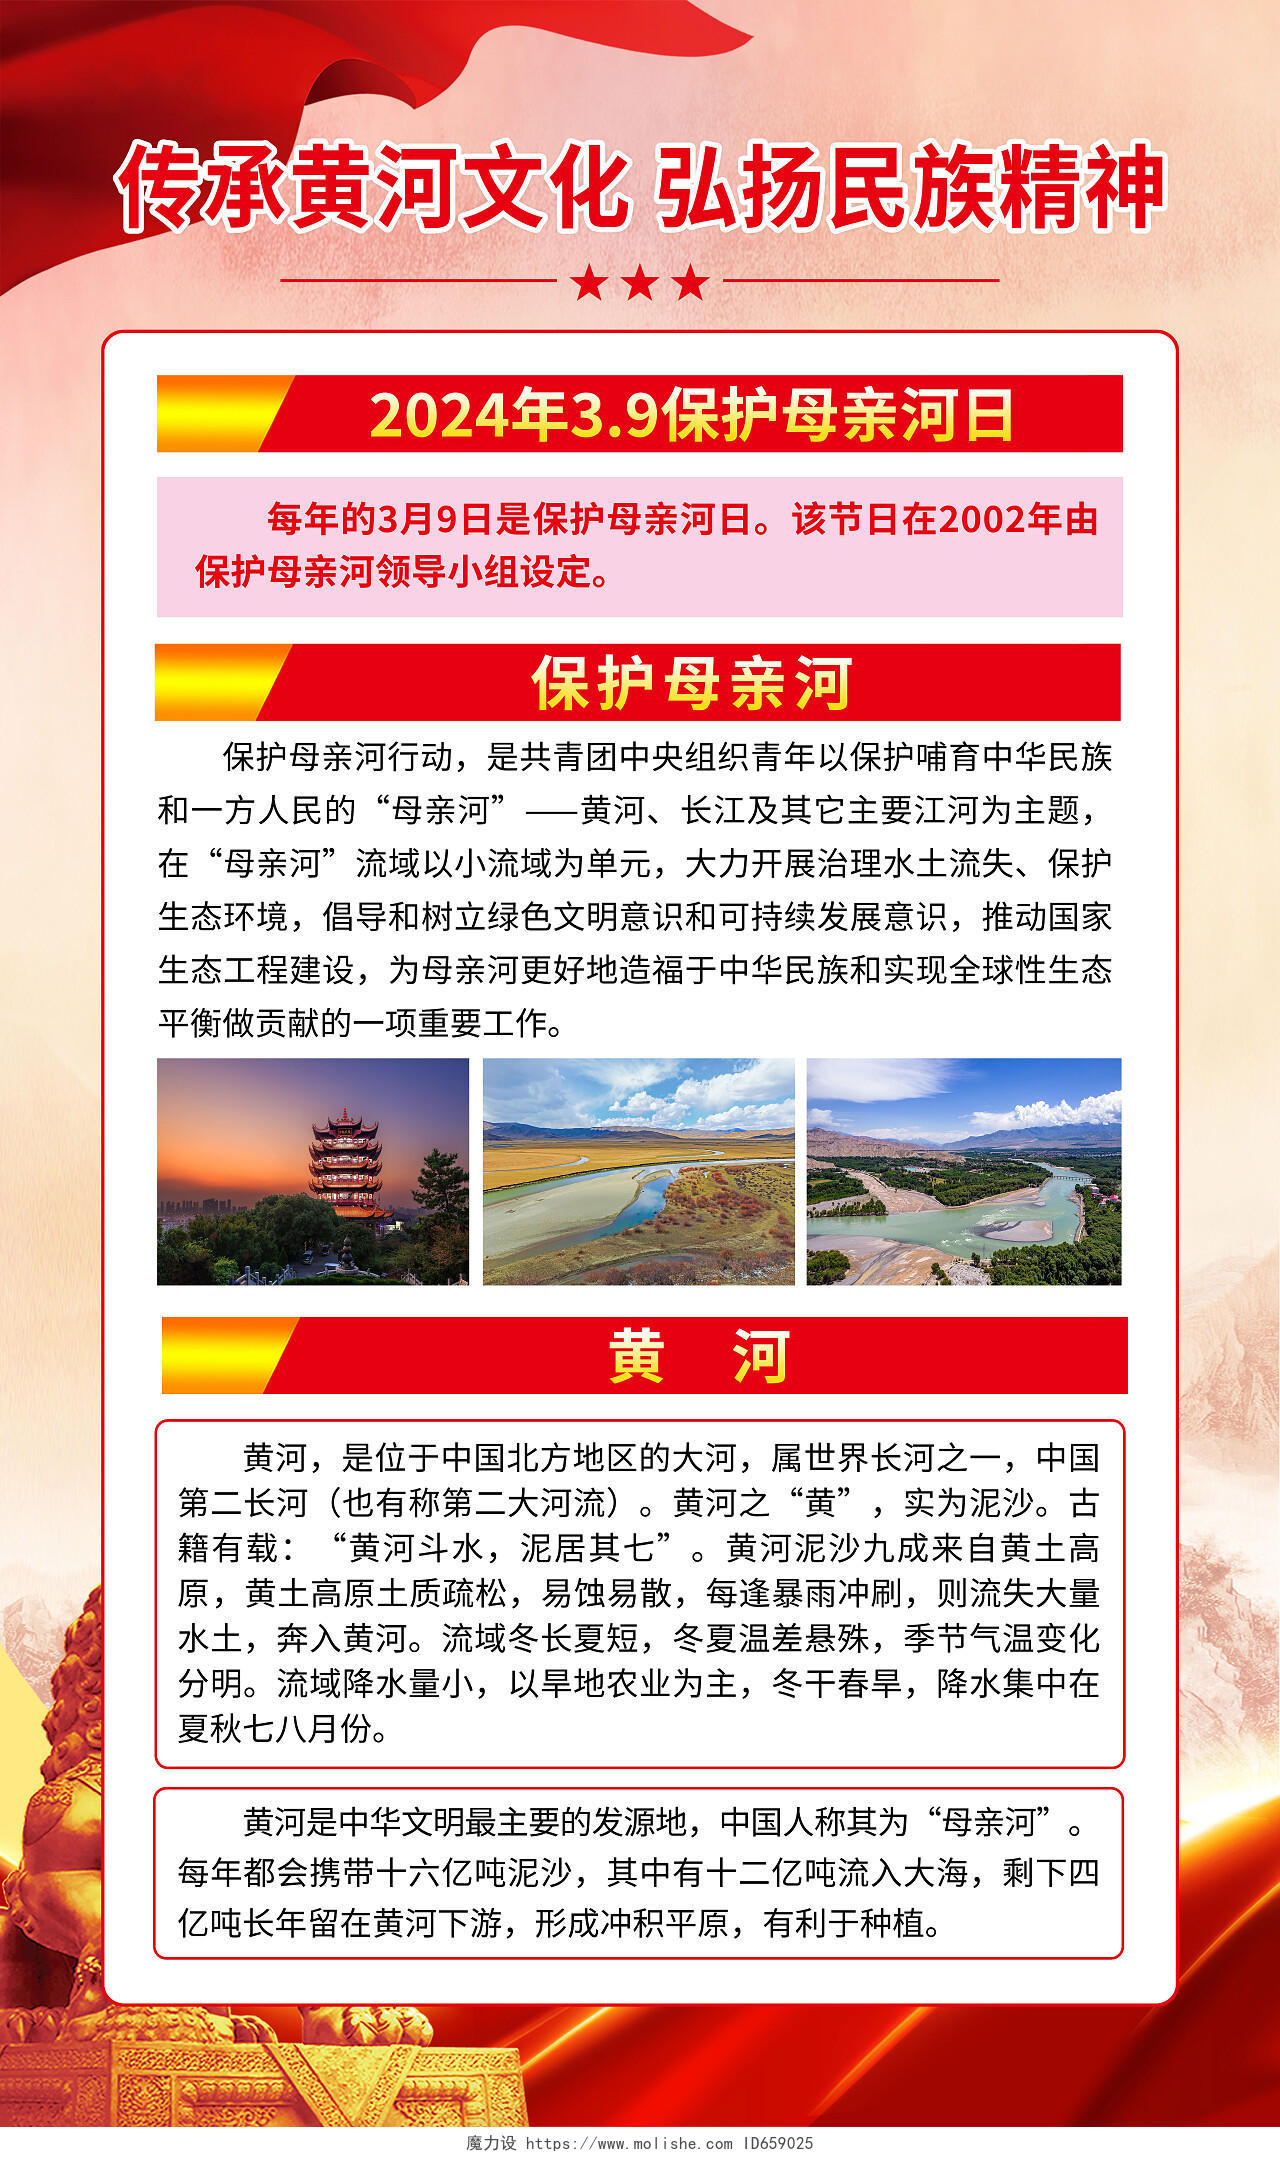 红色党建传承黄河文化弘扬民族精神保护母亲河日套图